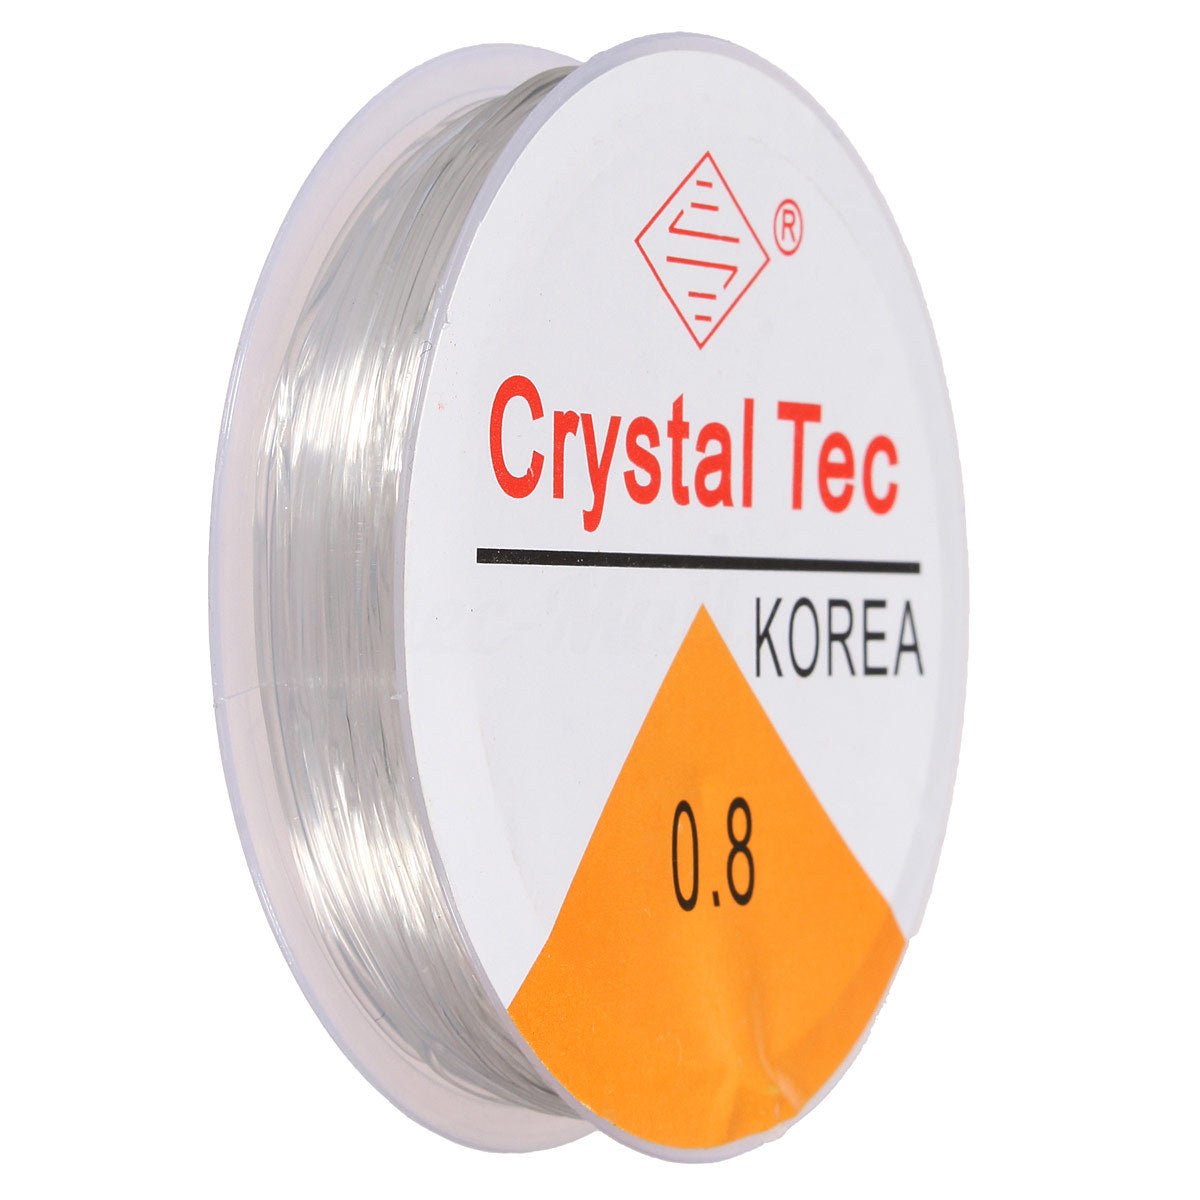 Elastic Stretch Silicon Elastic Thread - 0.8 Crystal Tec (small) - DLUXCA